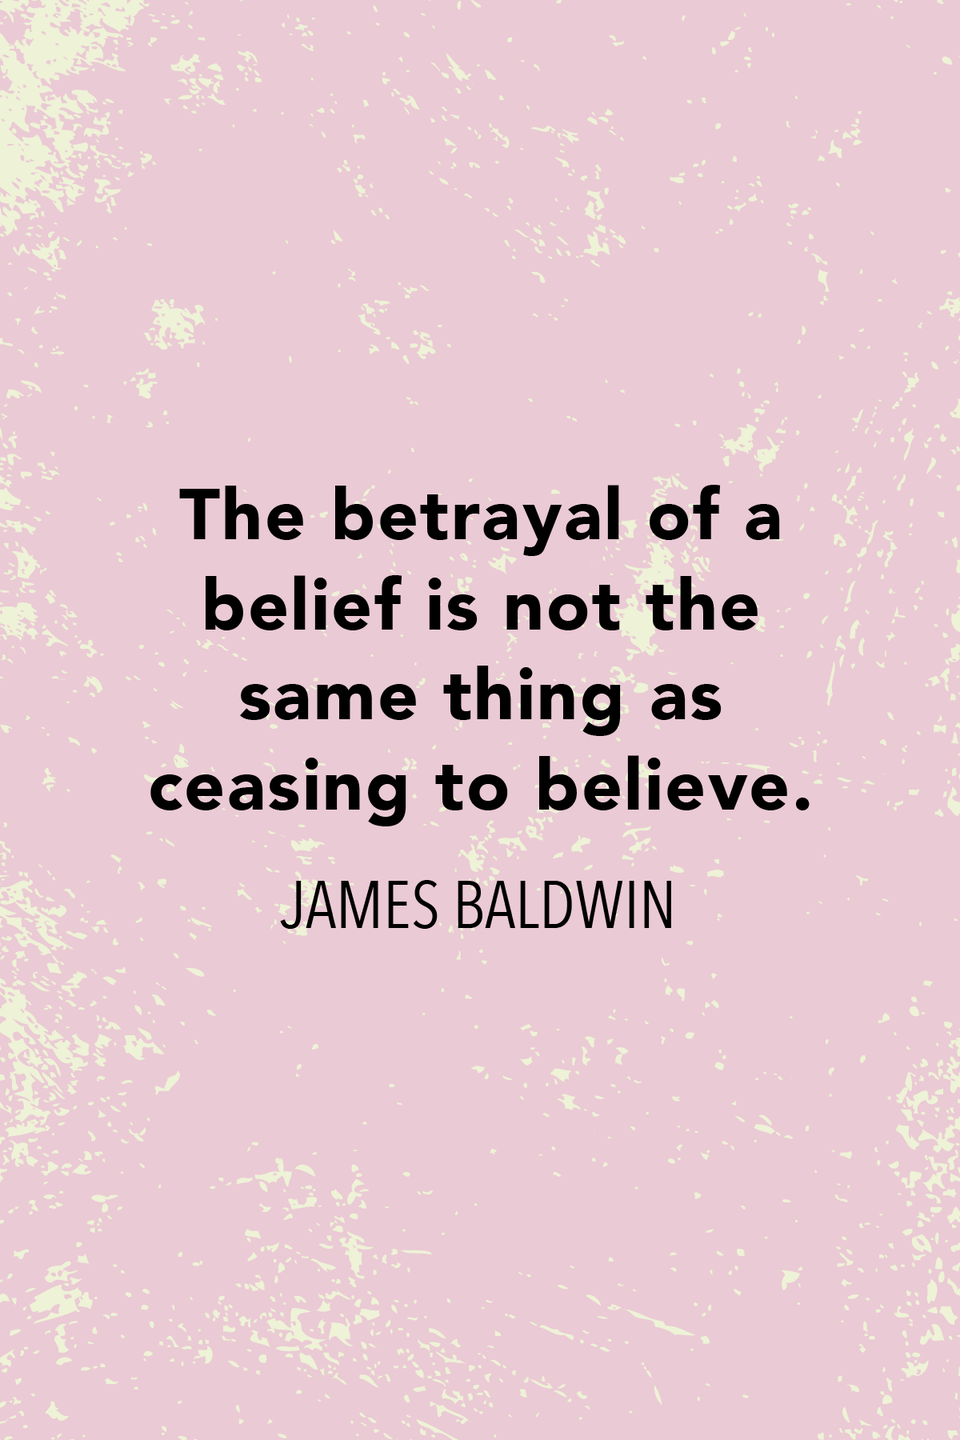 On belief